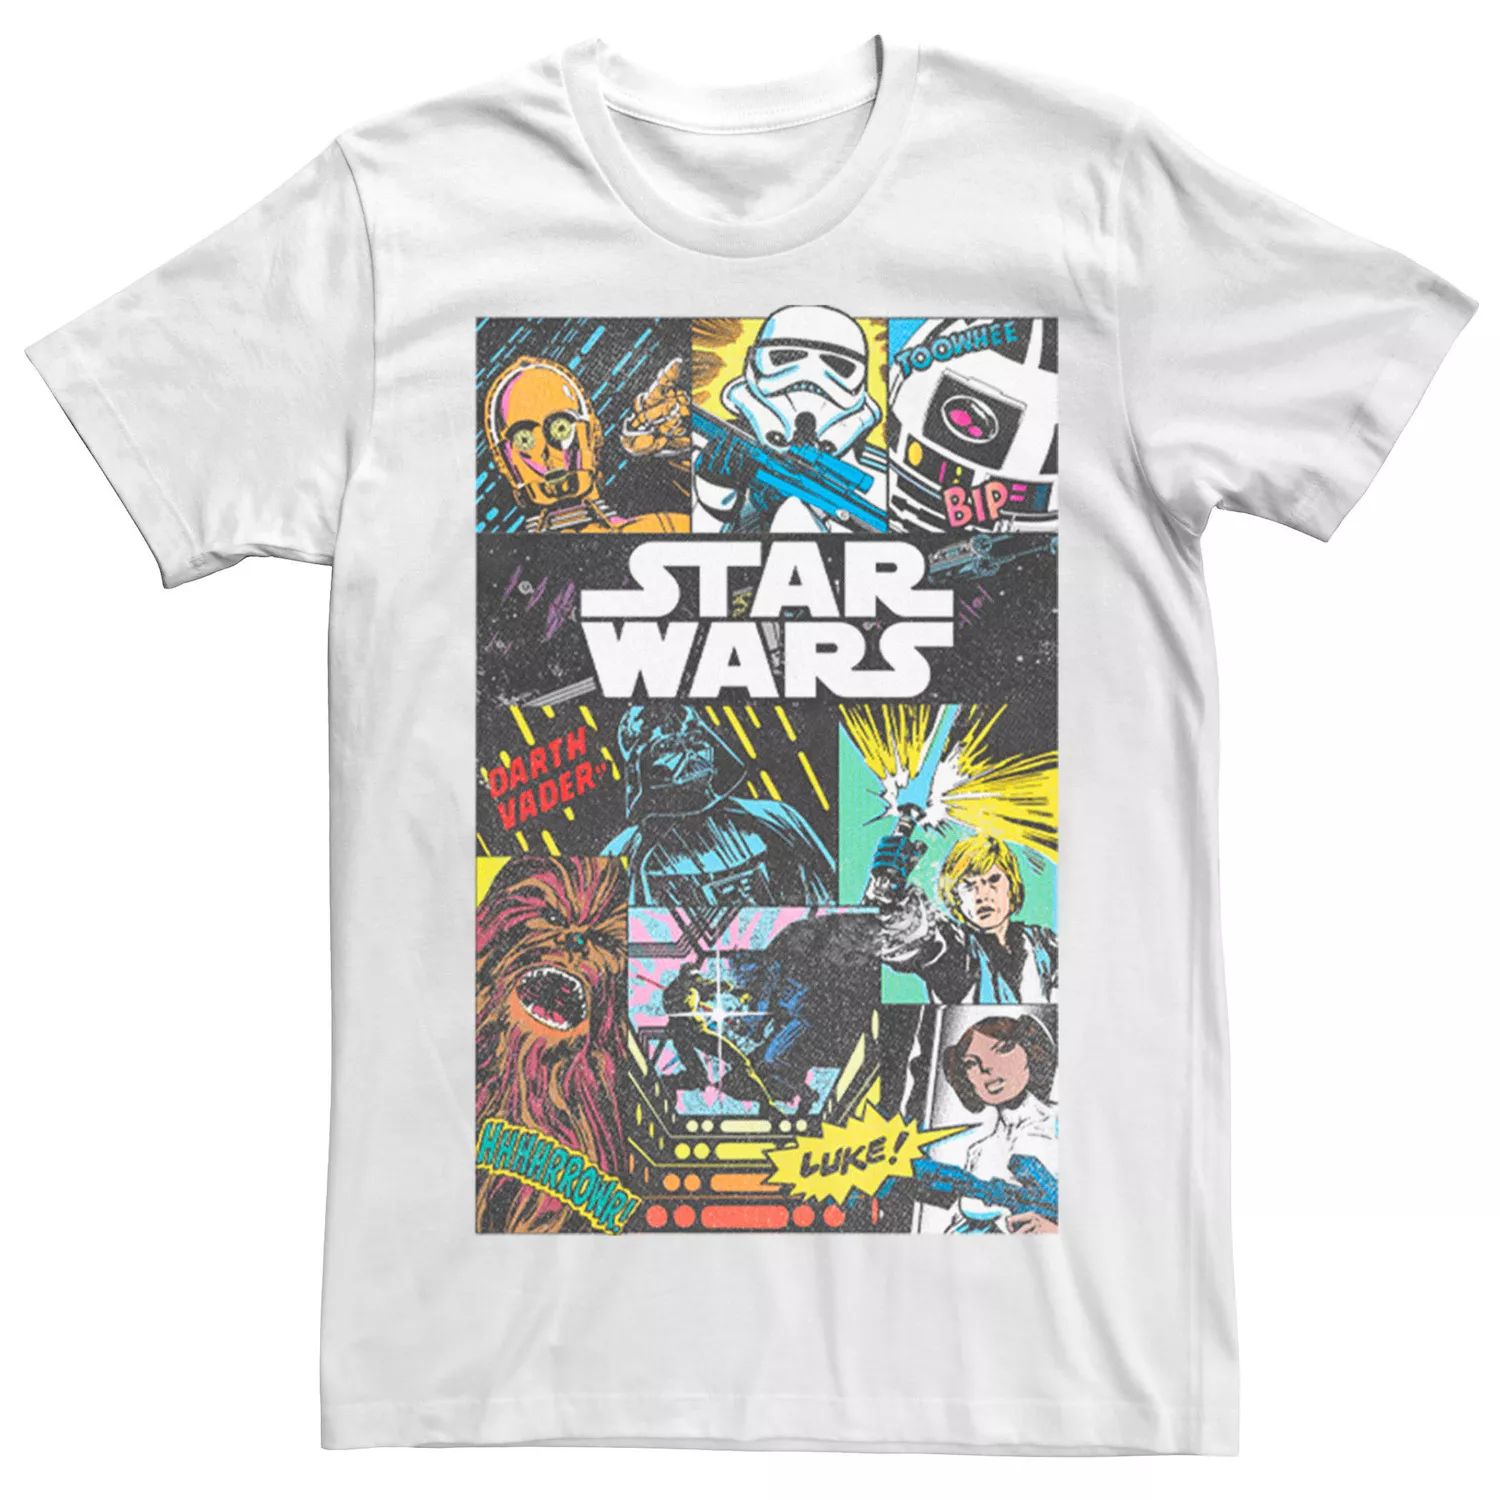 Мужская футболка с коллажем в стиле поп-арт «Звездные войны», групповая съемка Star Wars мужская футболка в стиле поп музыки звездные войны мандалорская групповая съемка licensed character